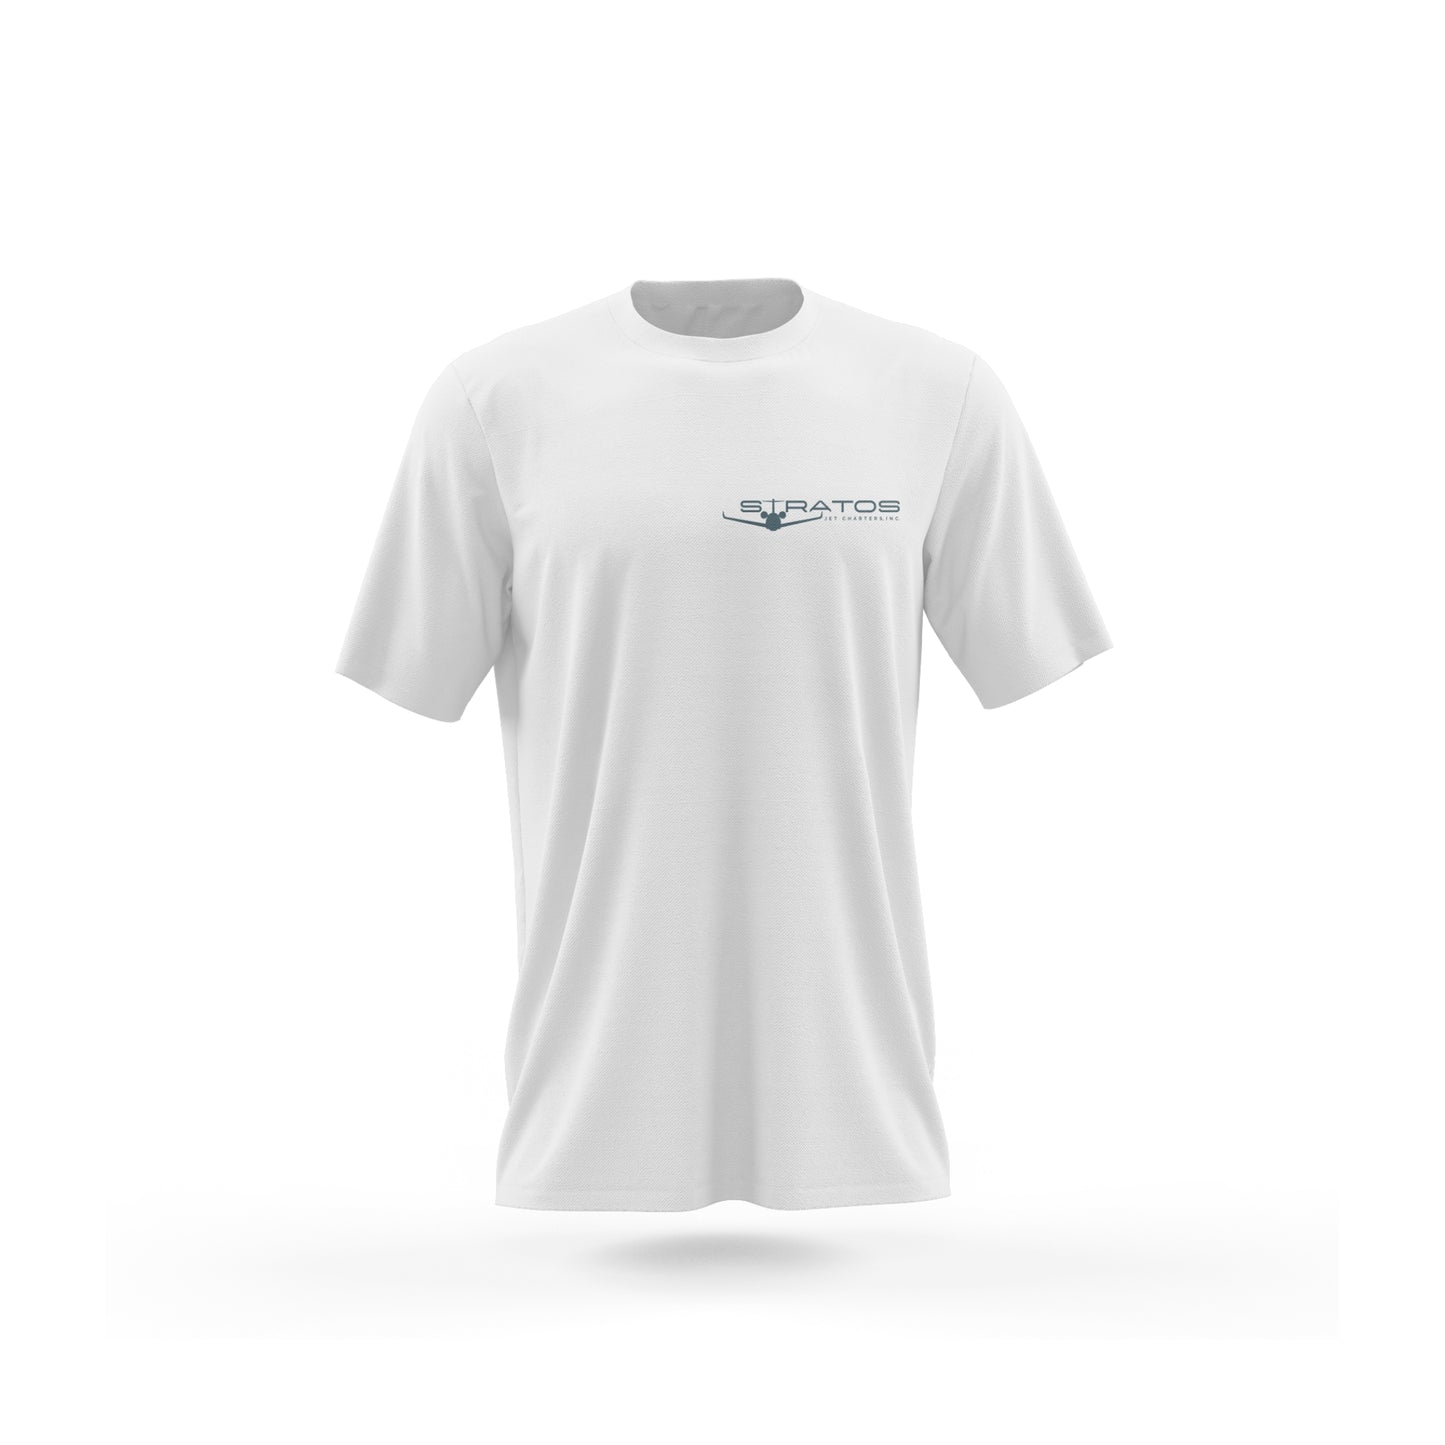 Bahamas T-shirt - White - Short Sleeve